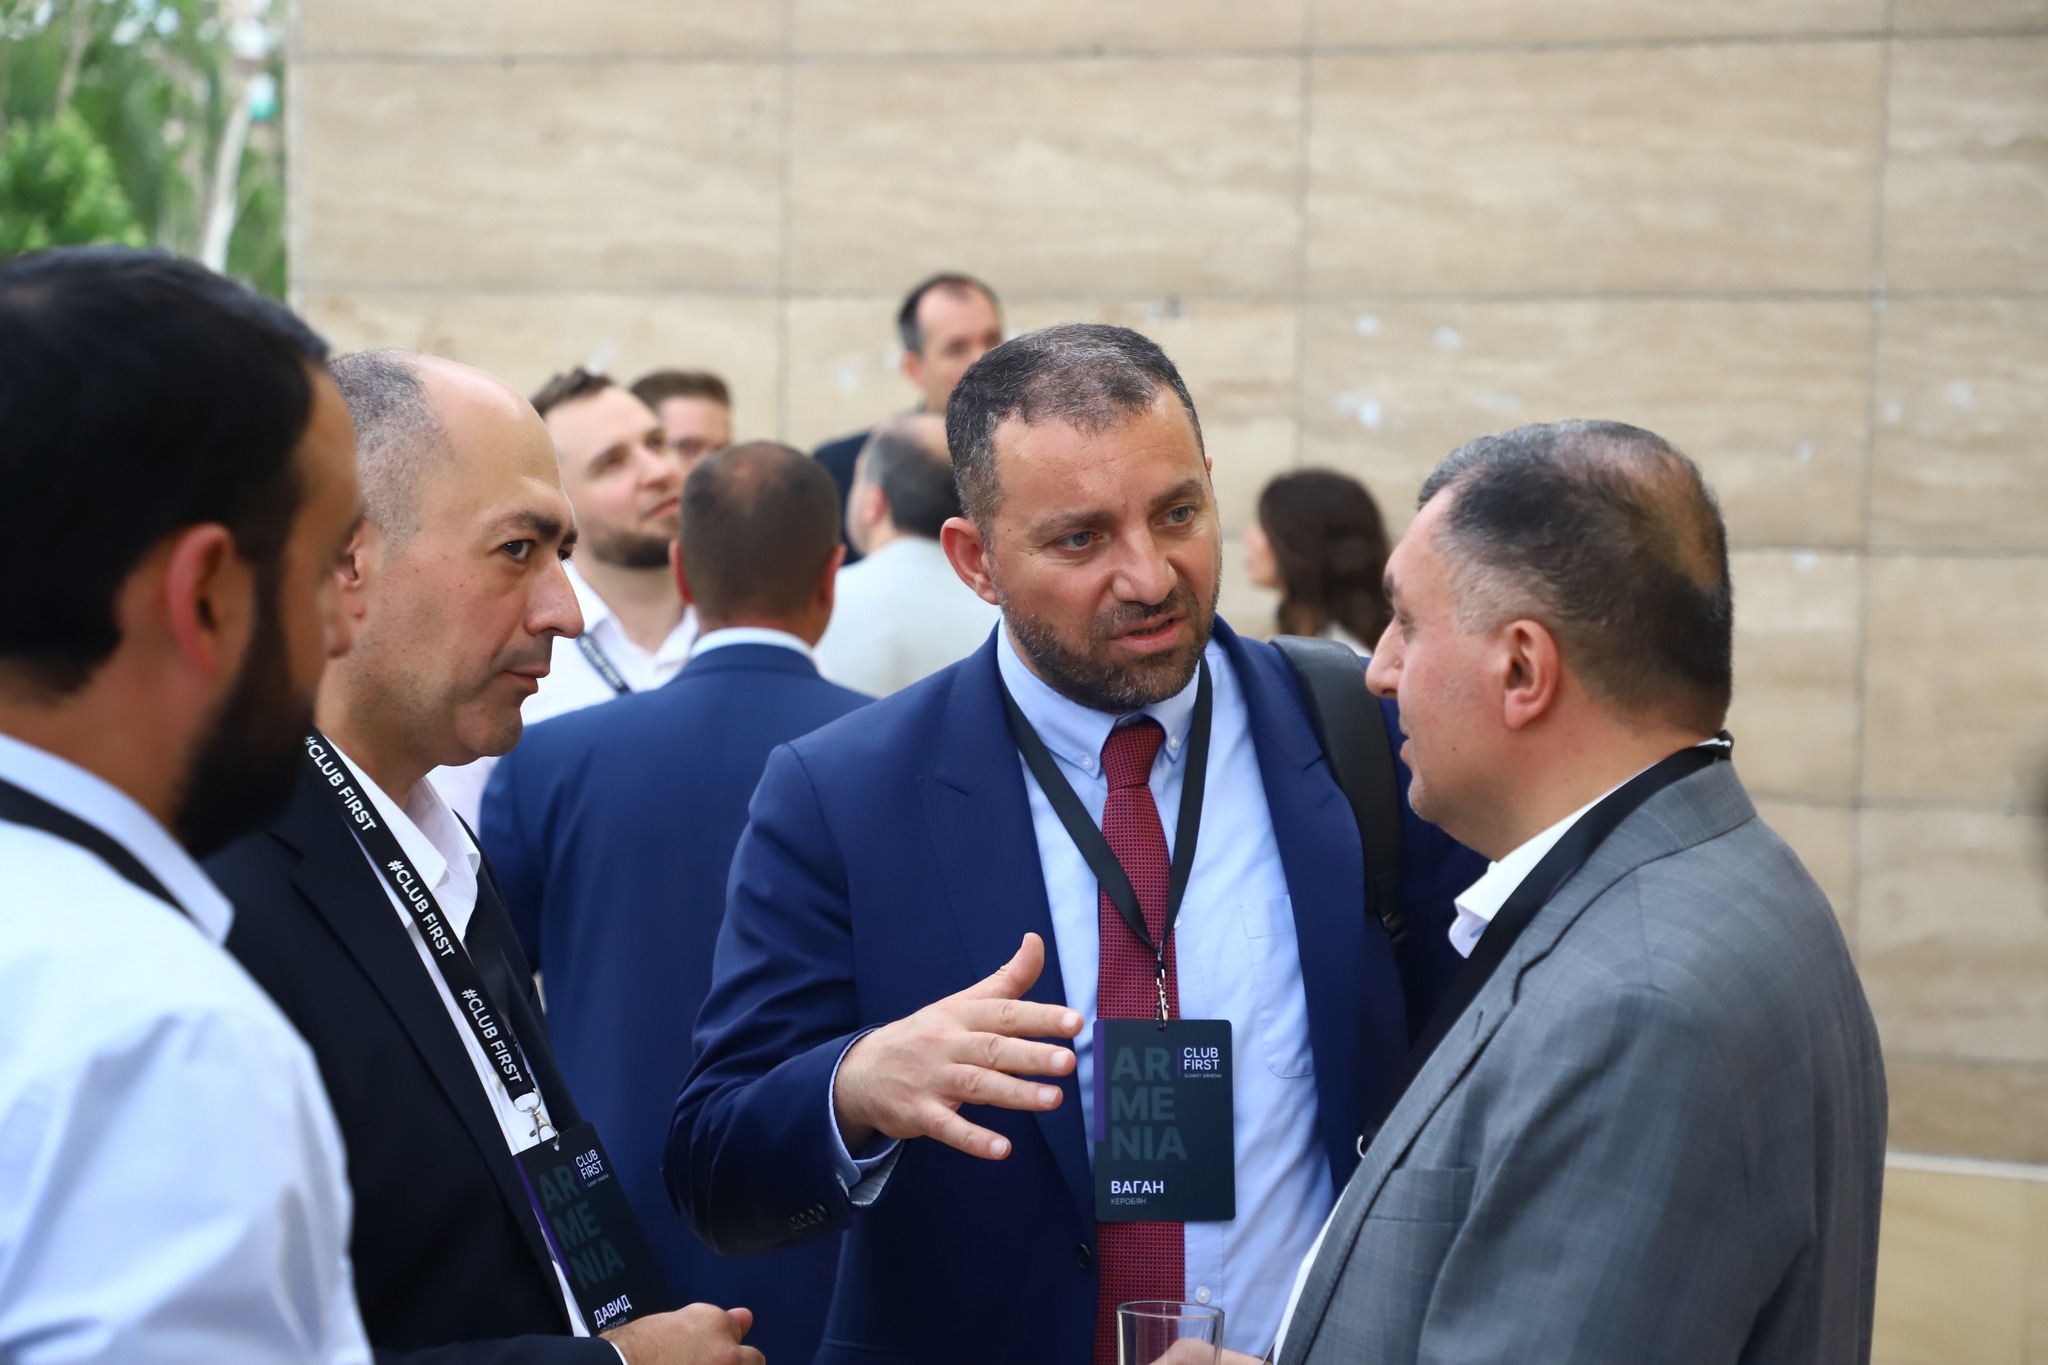 Քերոբյանը մասնակցել է CLUBFIRST SUMMIT ARMENIA միջոցառմանը, որին ներկա էին ՀՀ-ի և ՌԴ-ի գործարար շրջանակների ներկայացուցիչներ